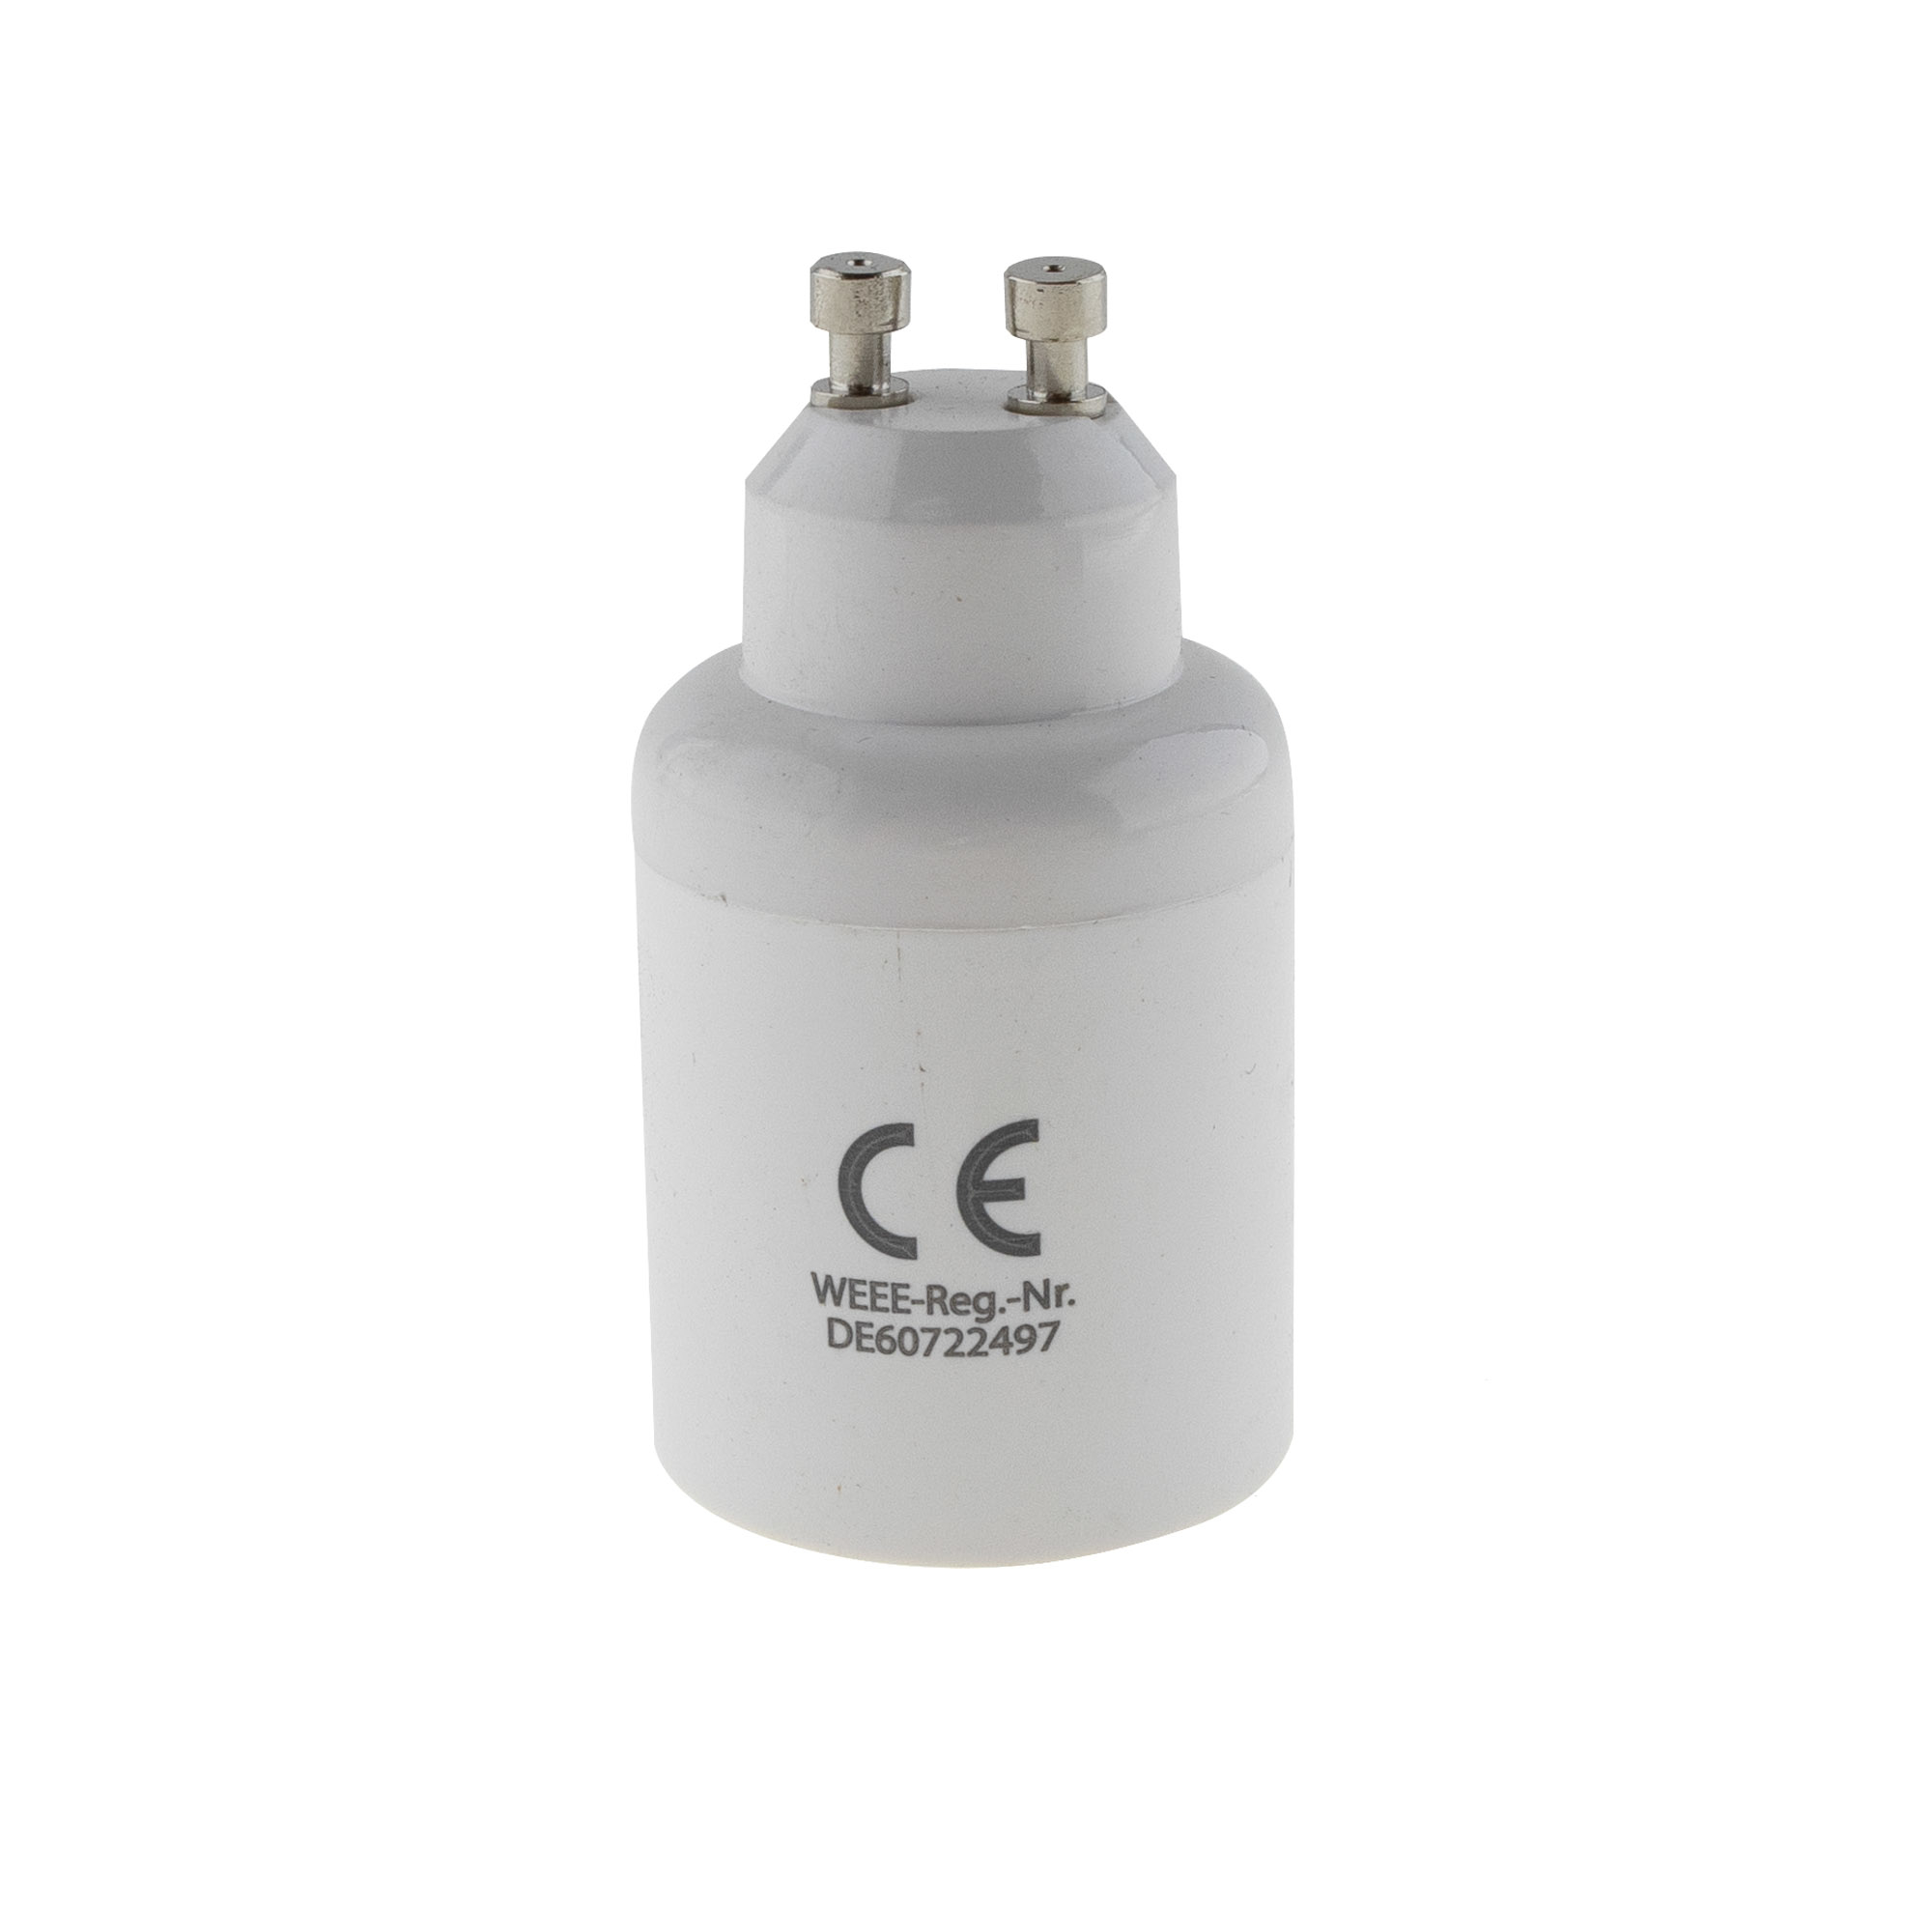 Lamp socket adaptor GU10 to E27 - 4PCS